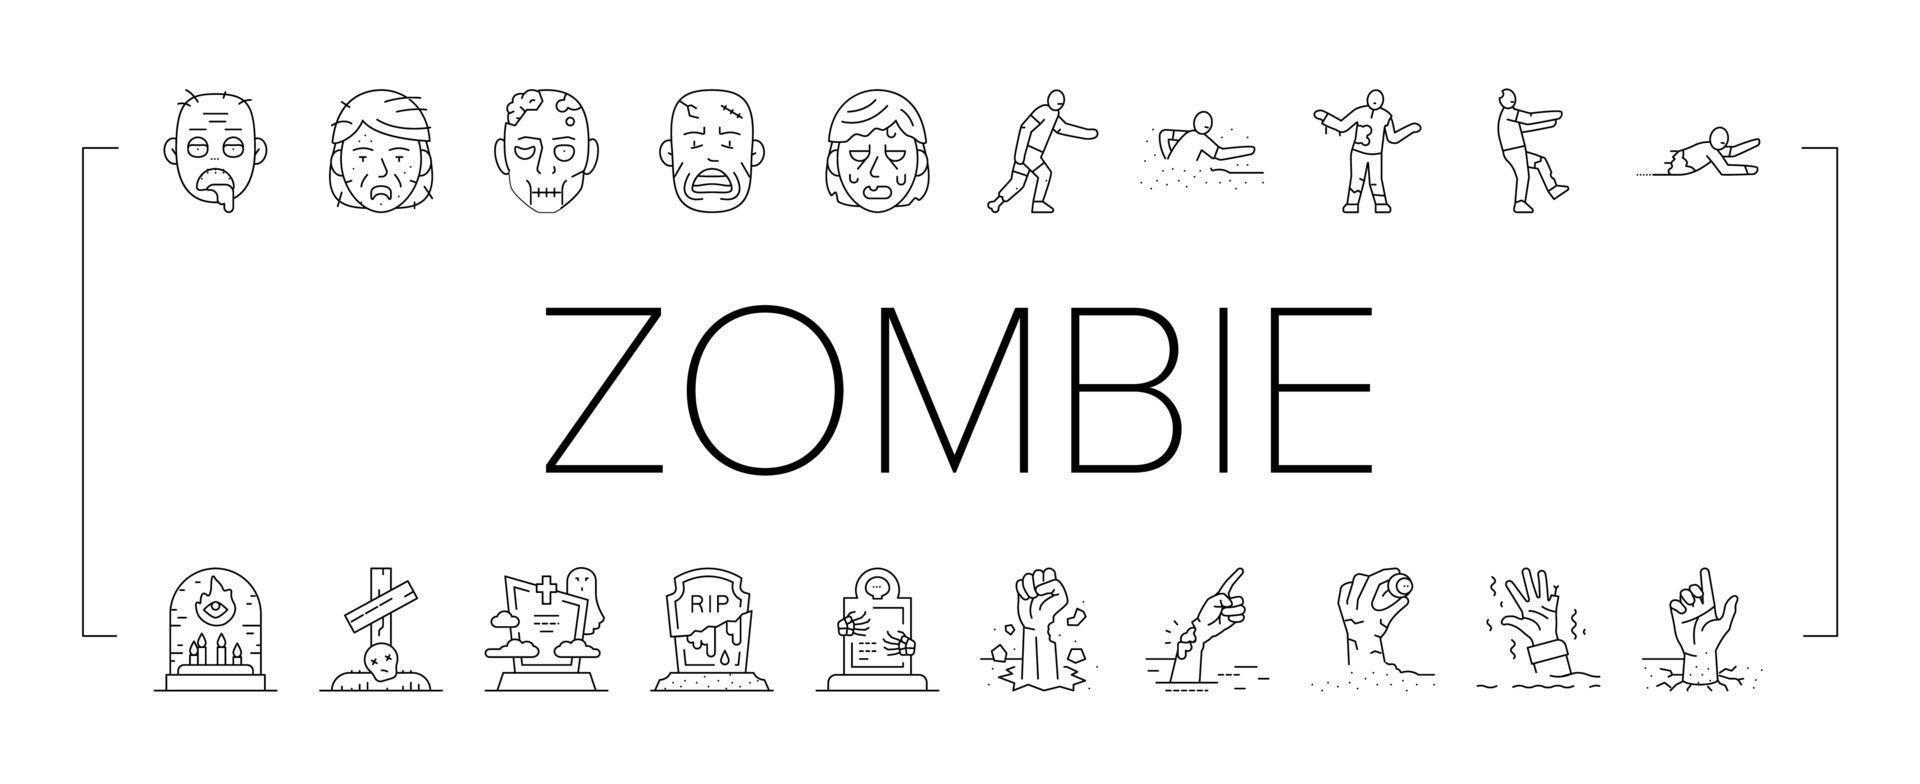 zombi horror de miedo muerto mal íconos conjunto vector